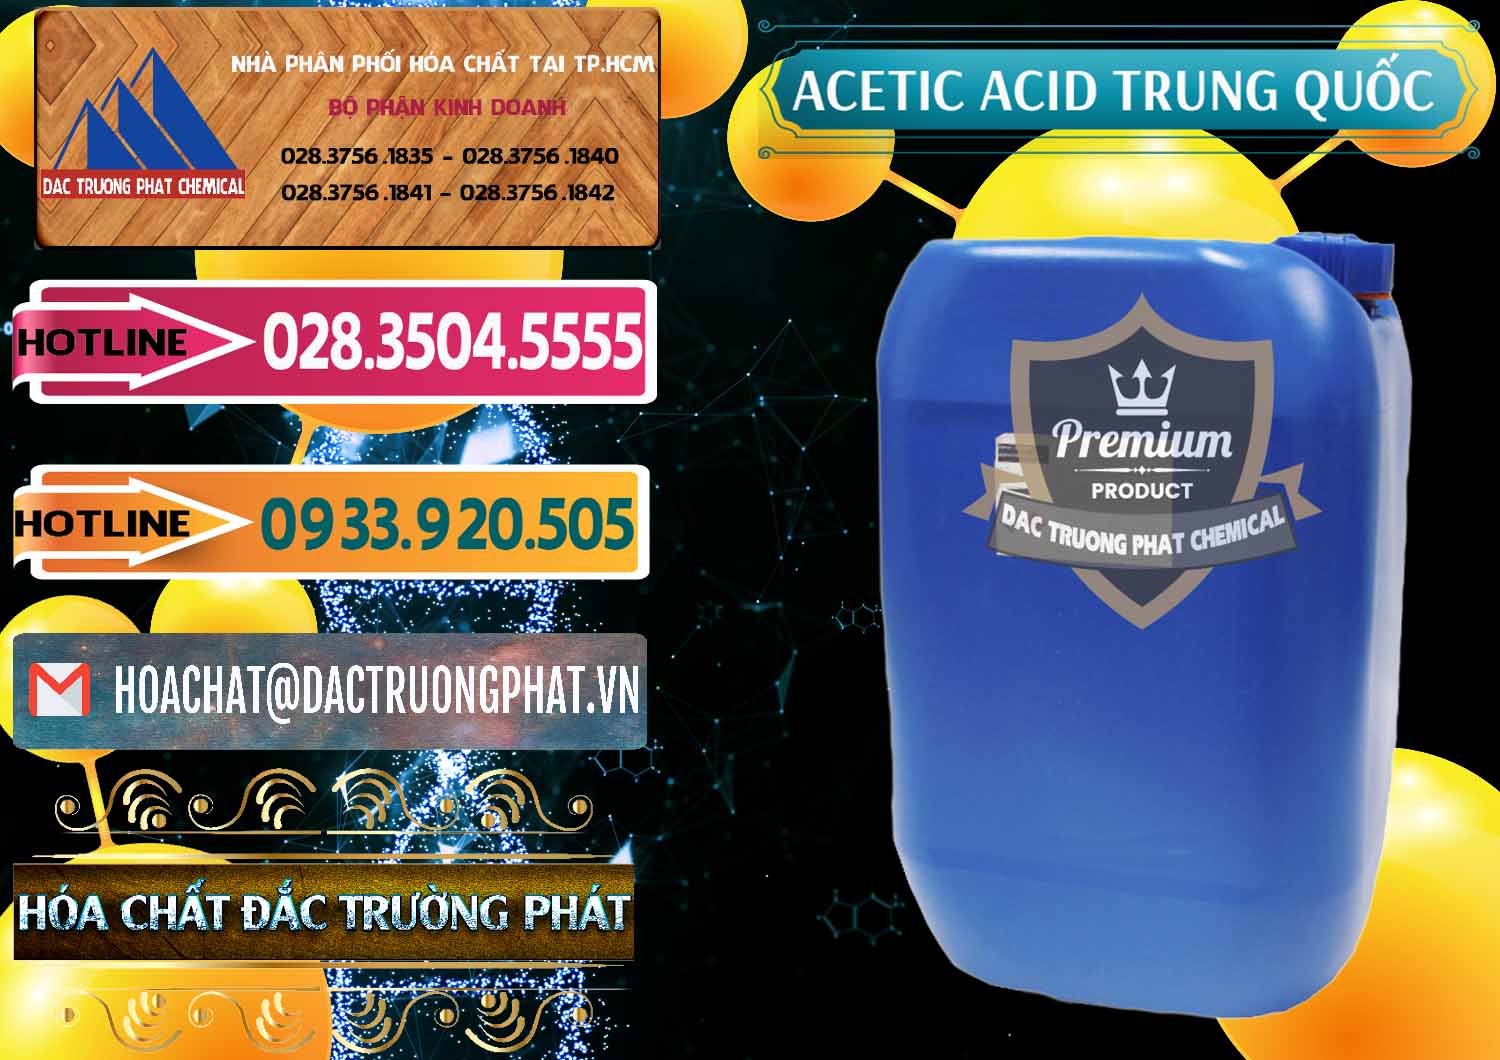 Cty nhập khẩu và bán Acetic Acid – Axit Acetic Trung Quốc China - 0358 - Bán _ phân phối hóa chất tại TP.HCM - dactruongphat.vn